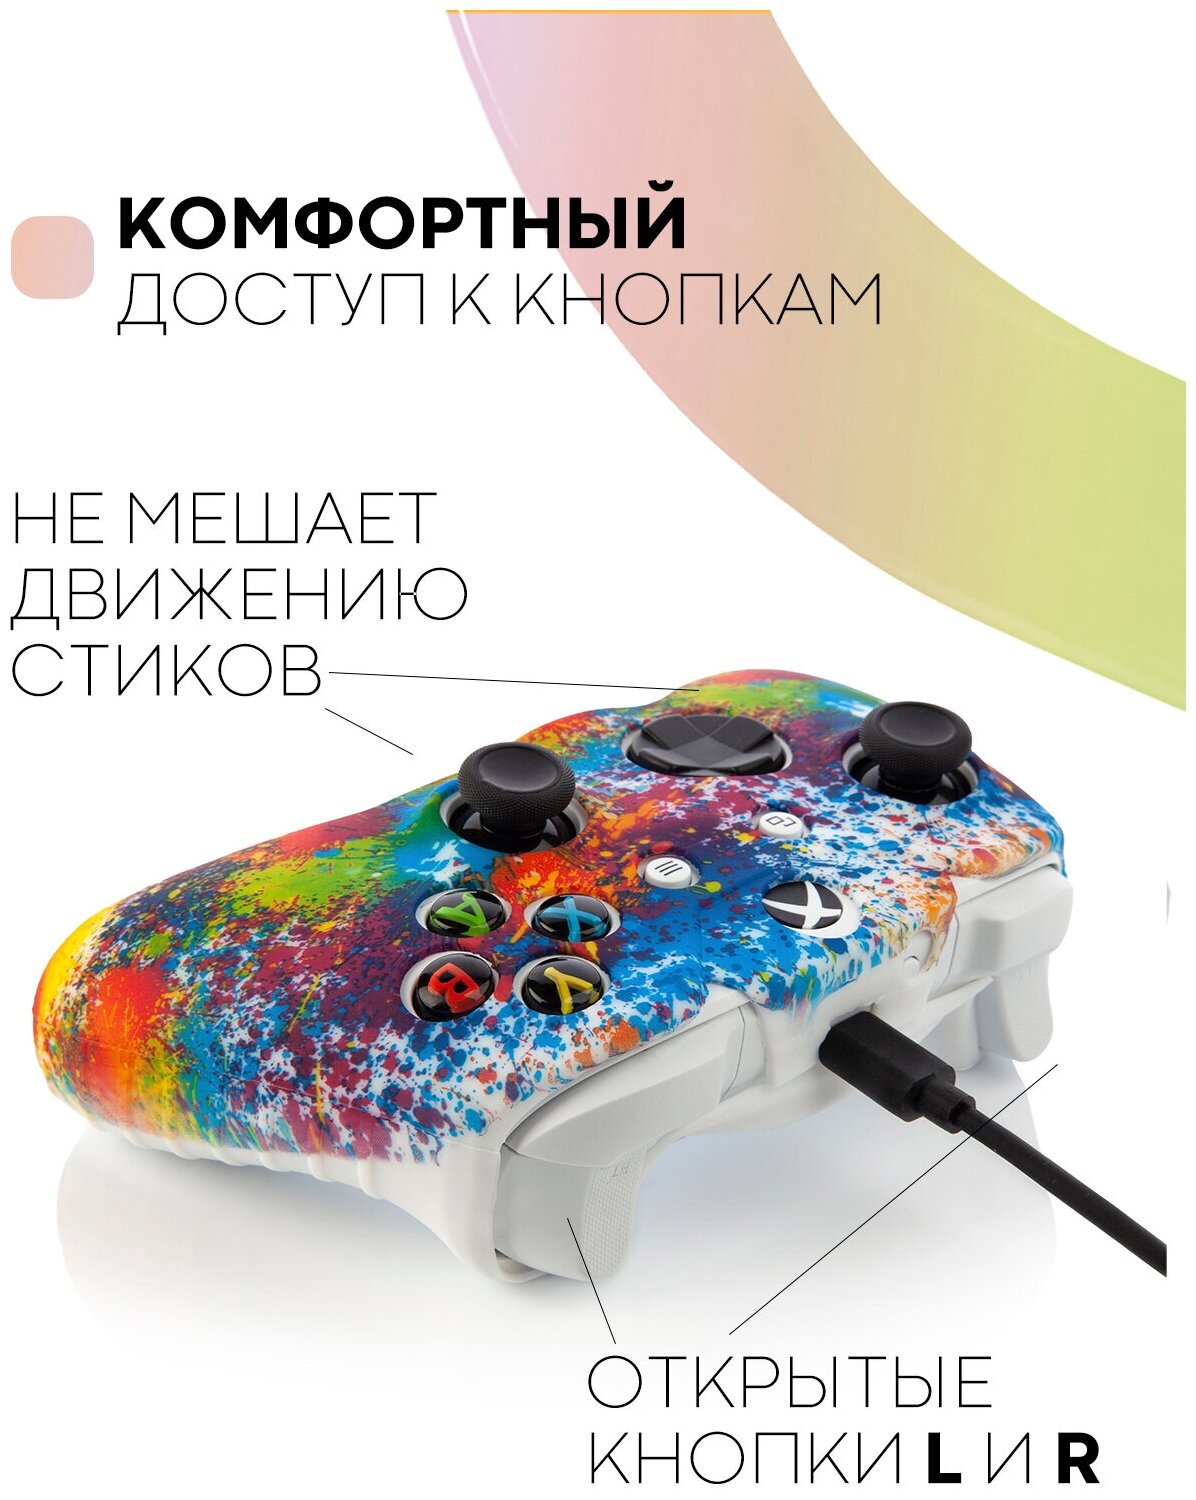 Защитный силиконовый чехол для джойстика Xbox One (накладка для контроллера геймпада Microsoft Xbox One)